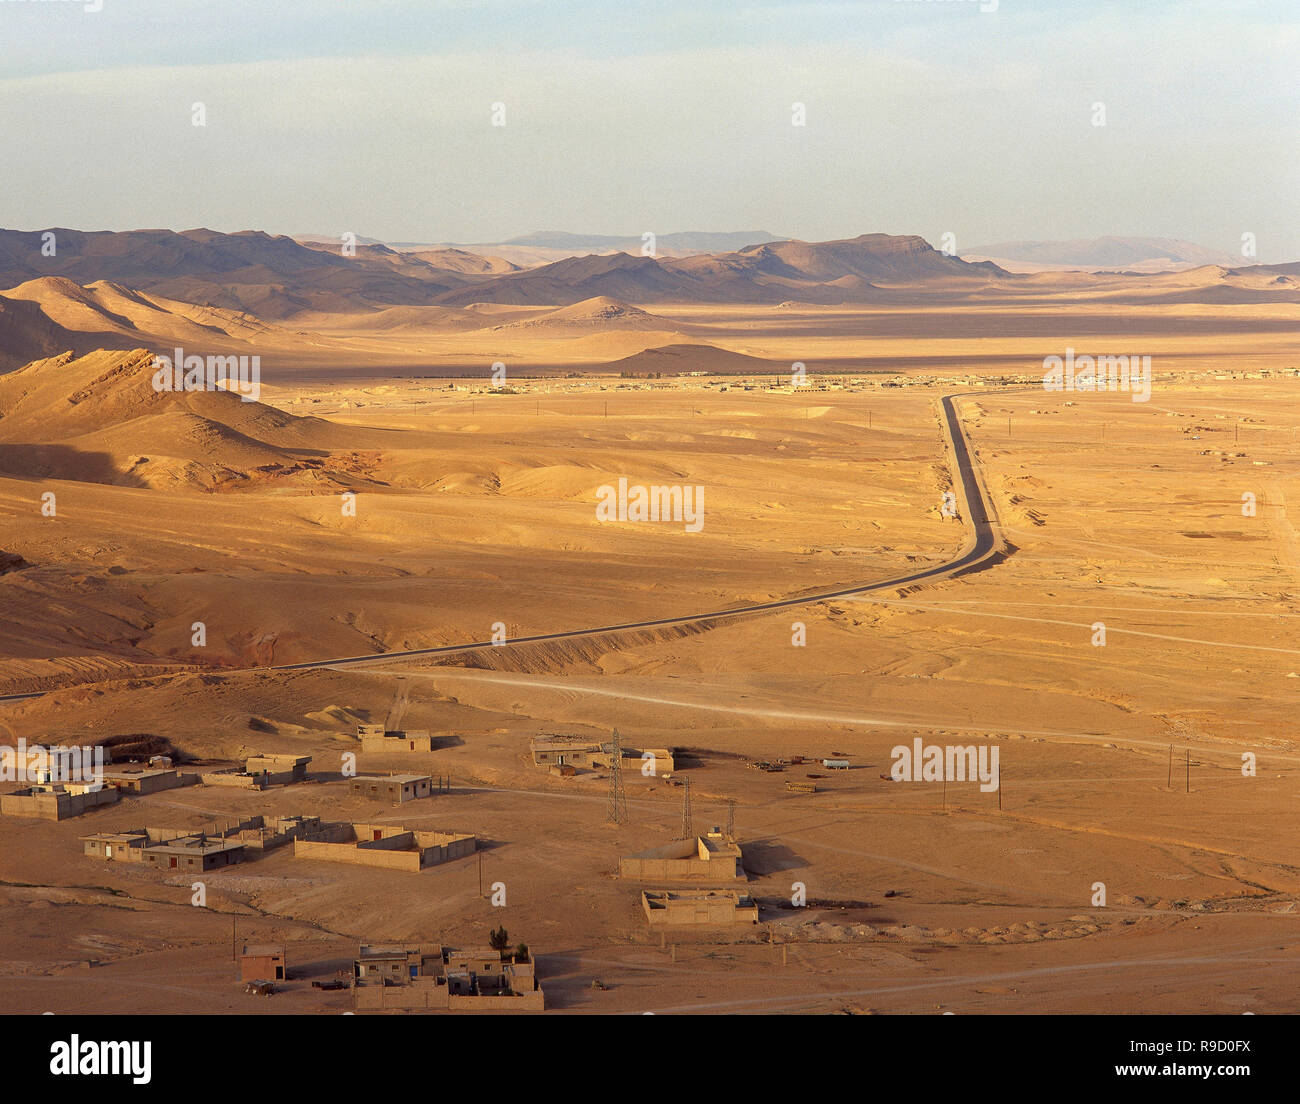 Syrien. Die Oase von Palmyra. Panoramablick von der Syrischen Wüste. Foto genommen, bevor Syryan Bürgerkrieg. Stockfoto